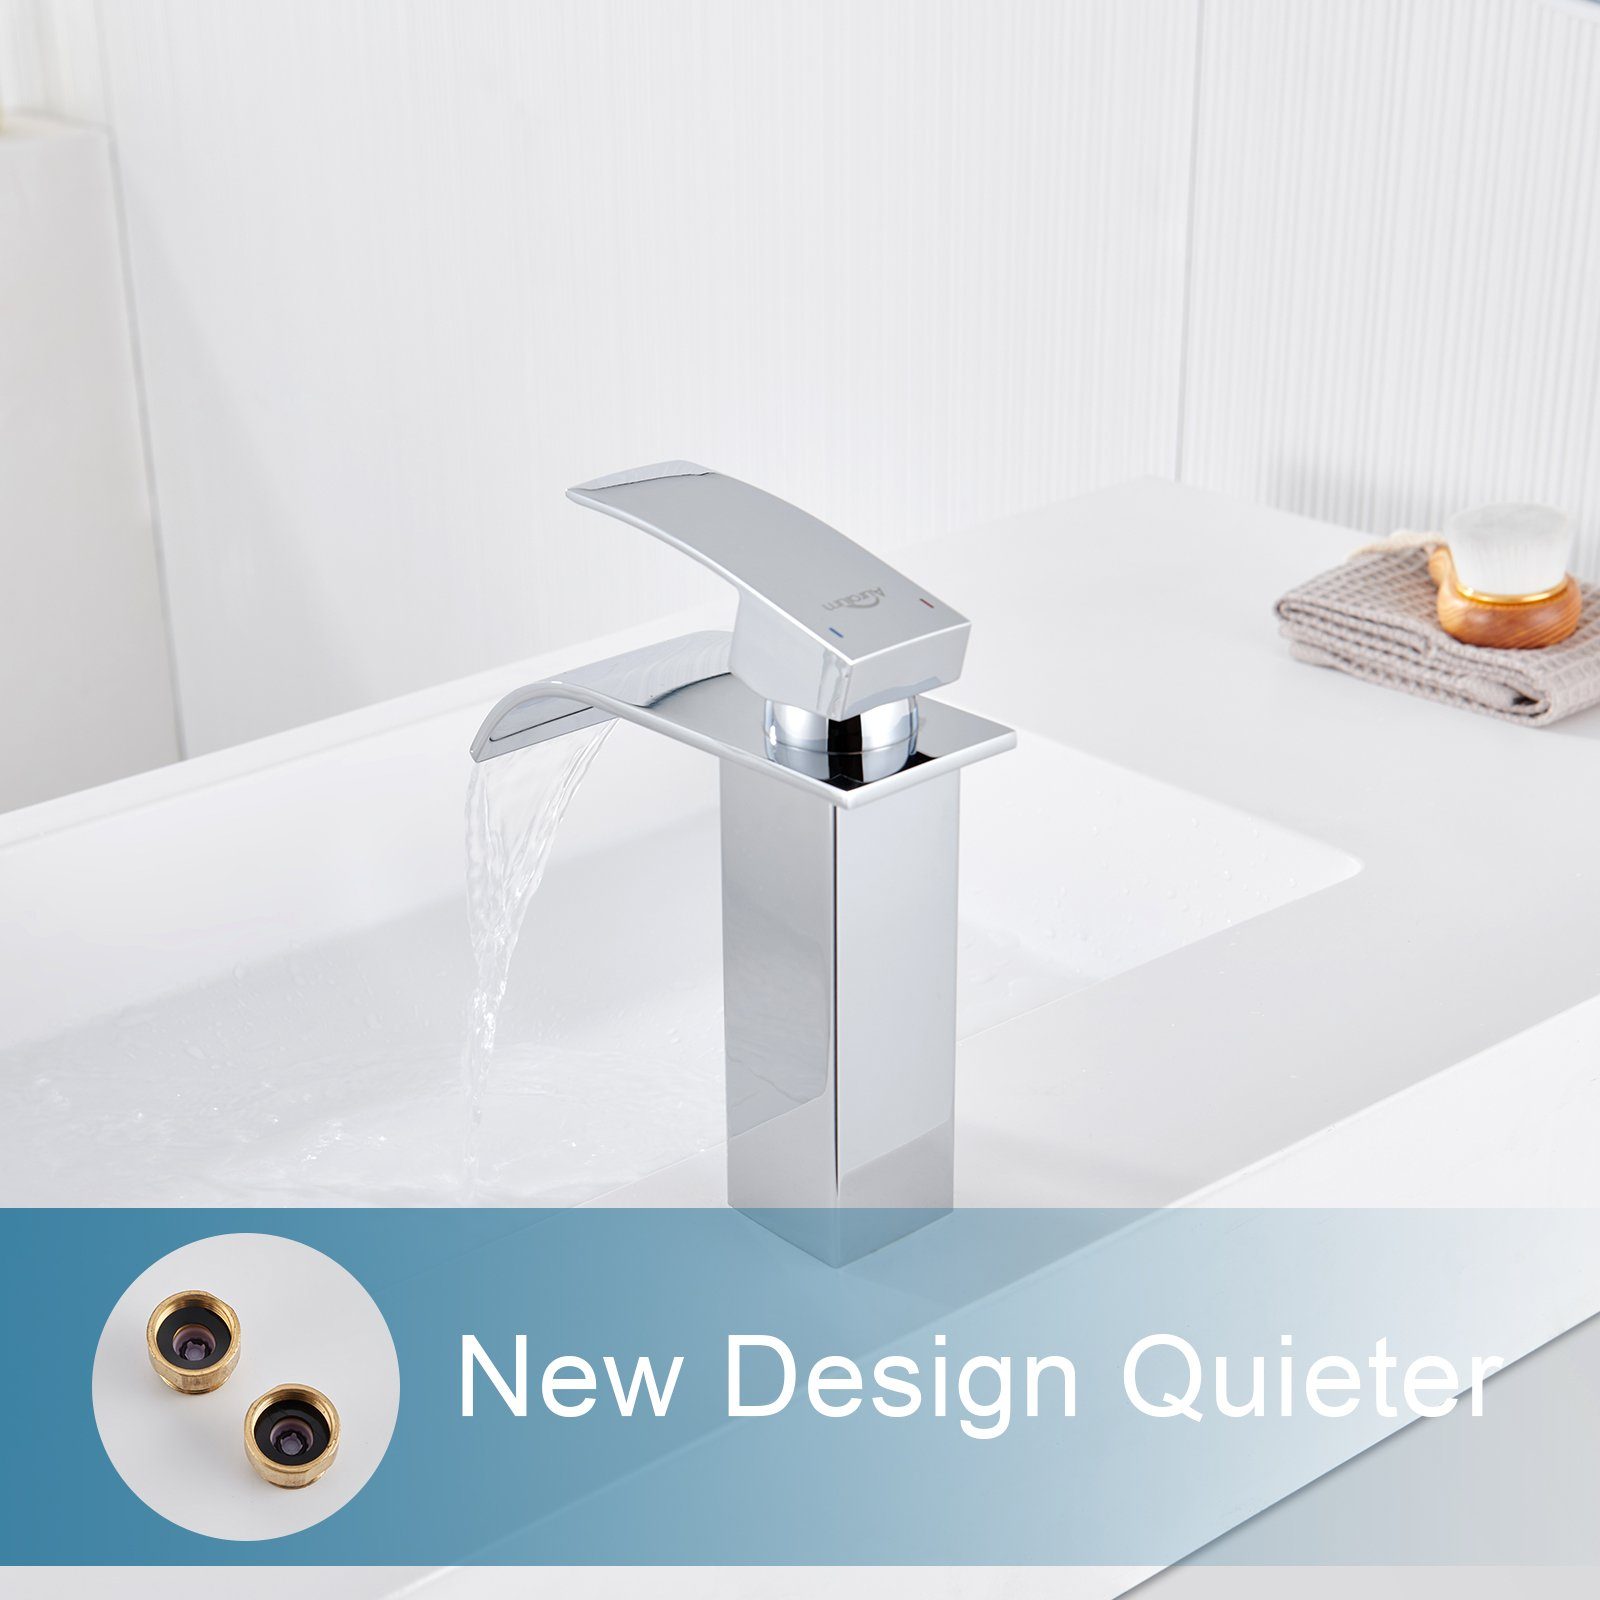 Auralum Waschtischarmatur Wasserfall Wasserhahn Badarmatur Wasserfall-Design Mischbatterie Waschbecken Einhand